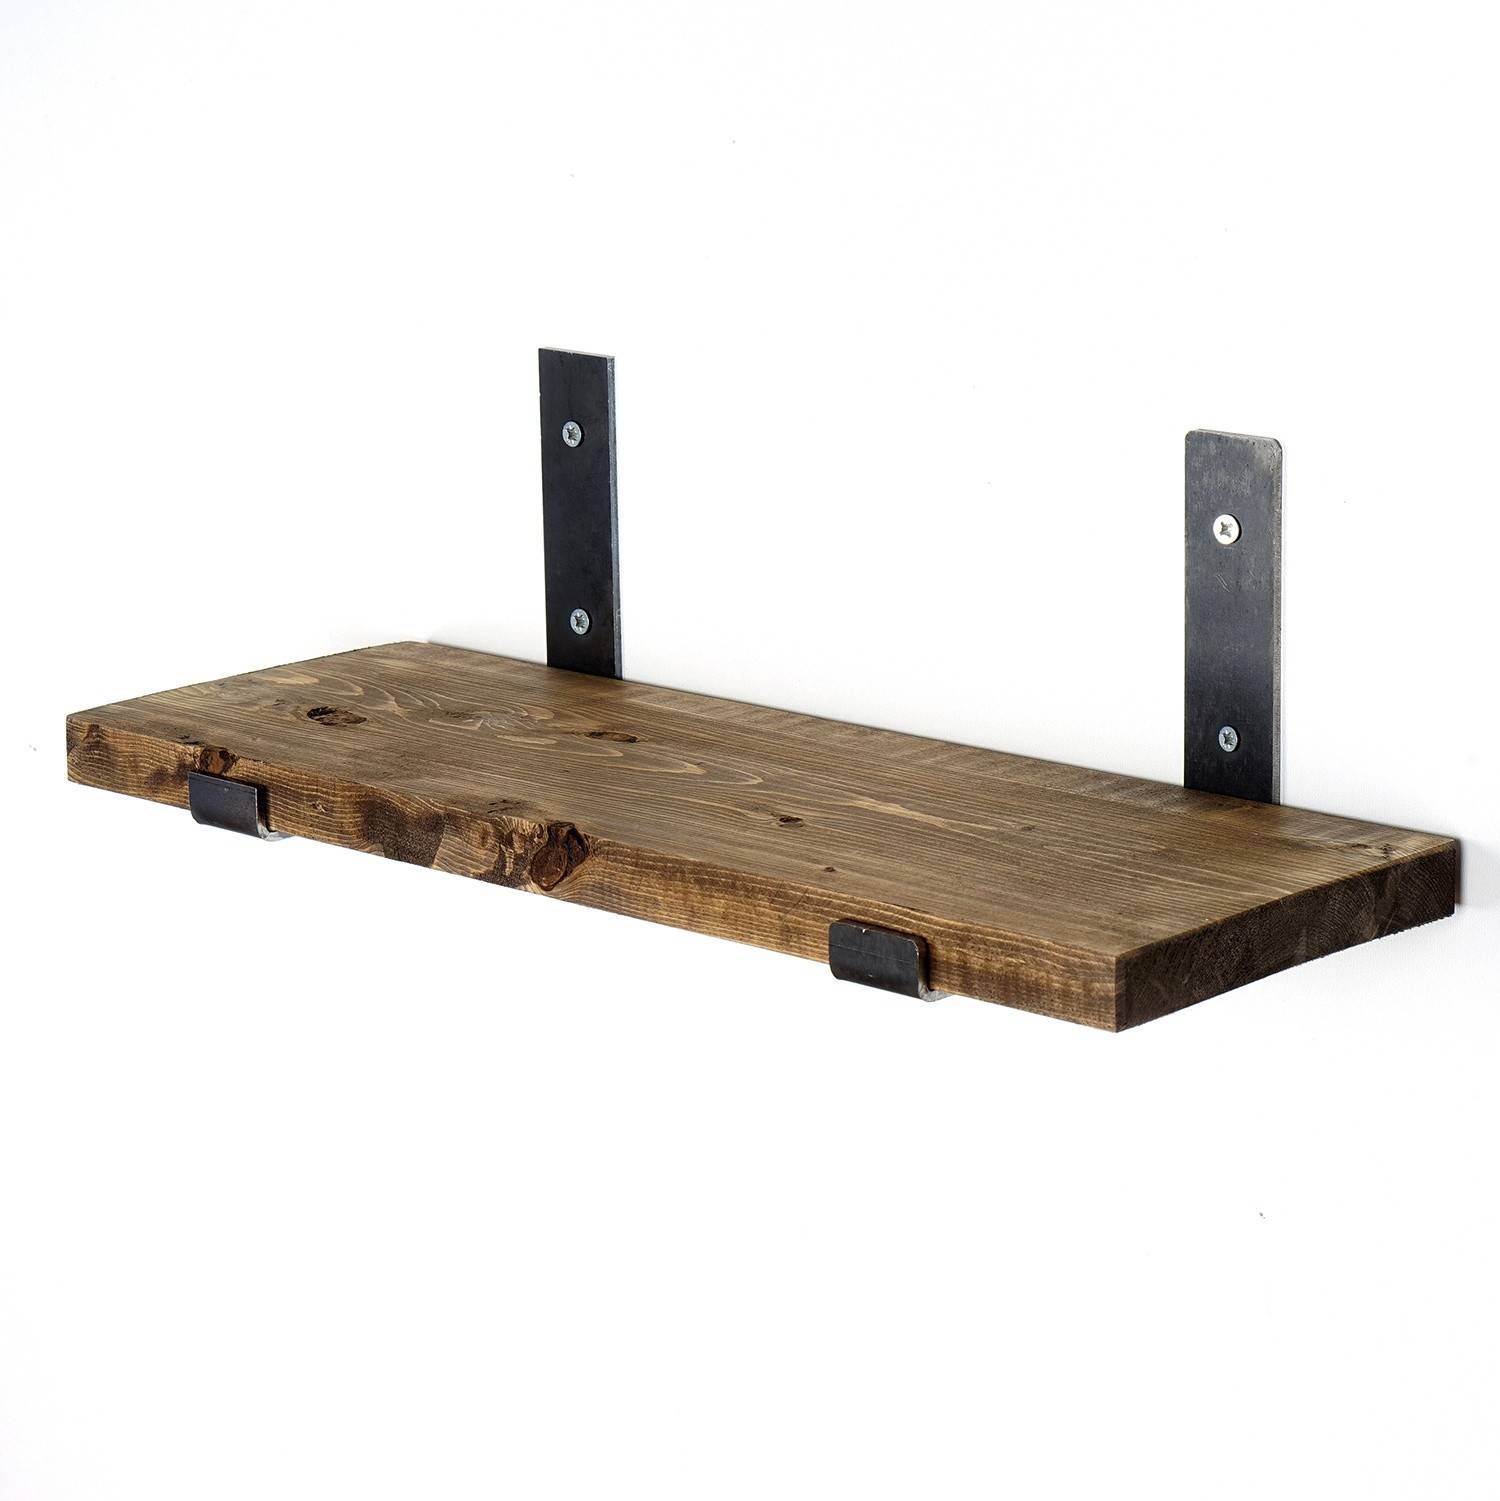 Amity industriële wandplank L60cm Donker hout en metaal Zwart